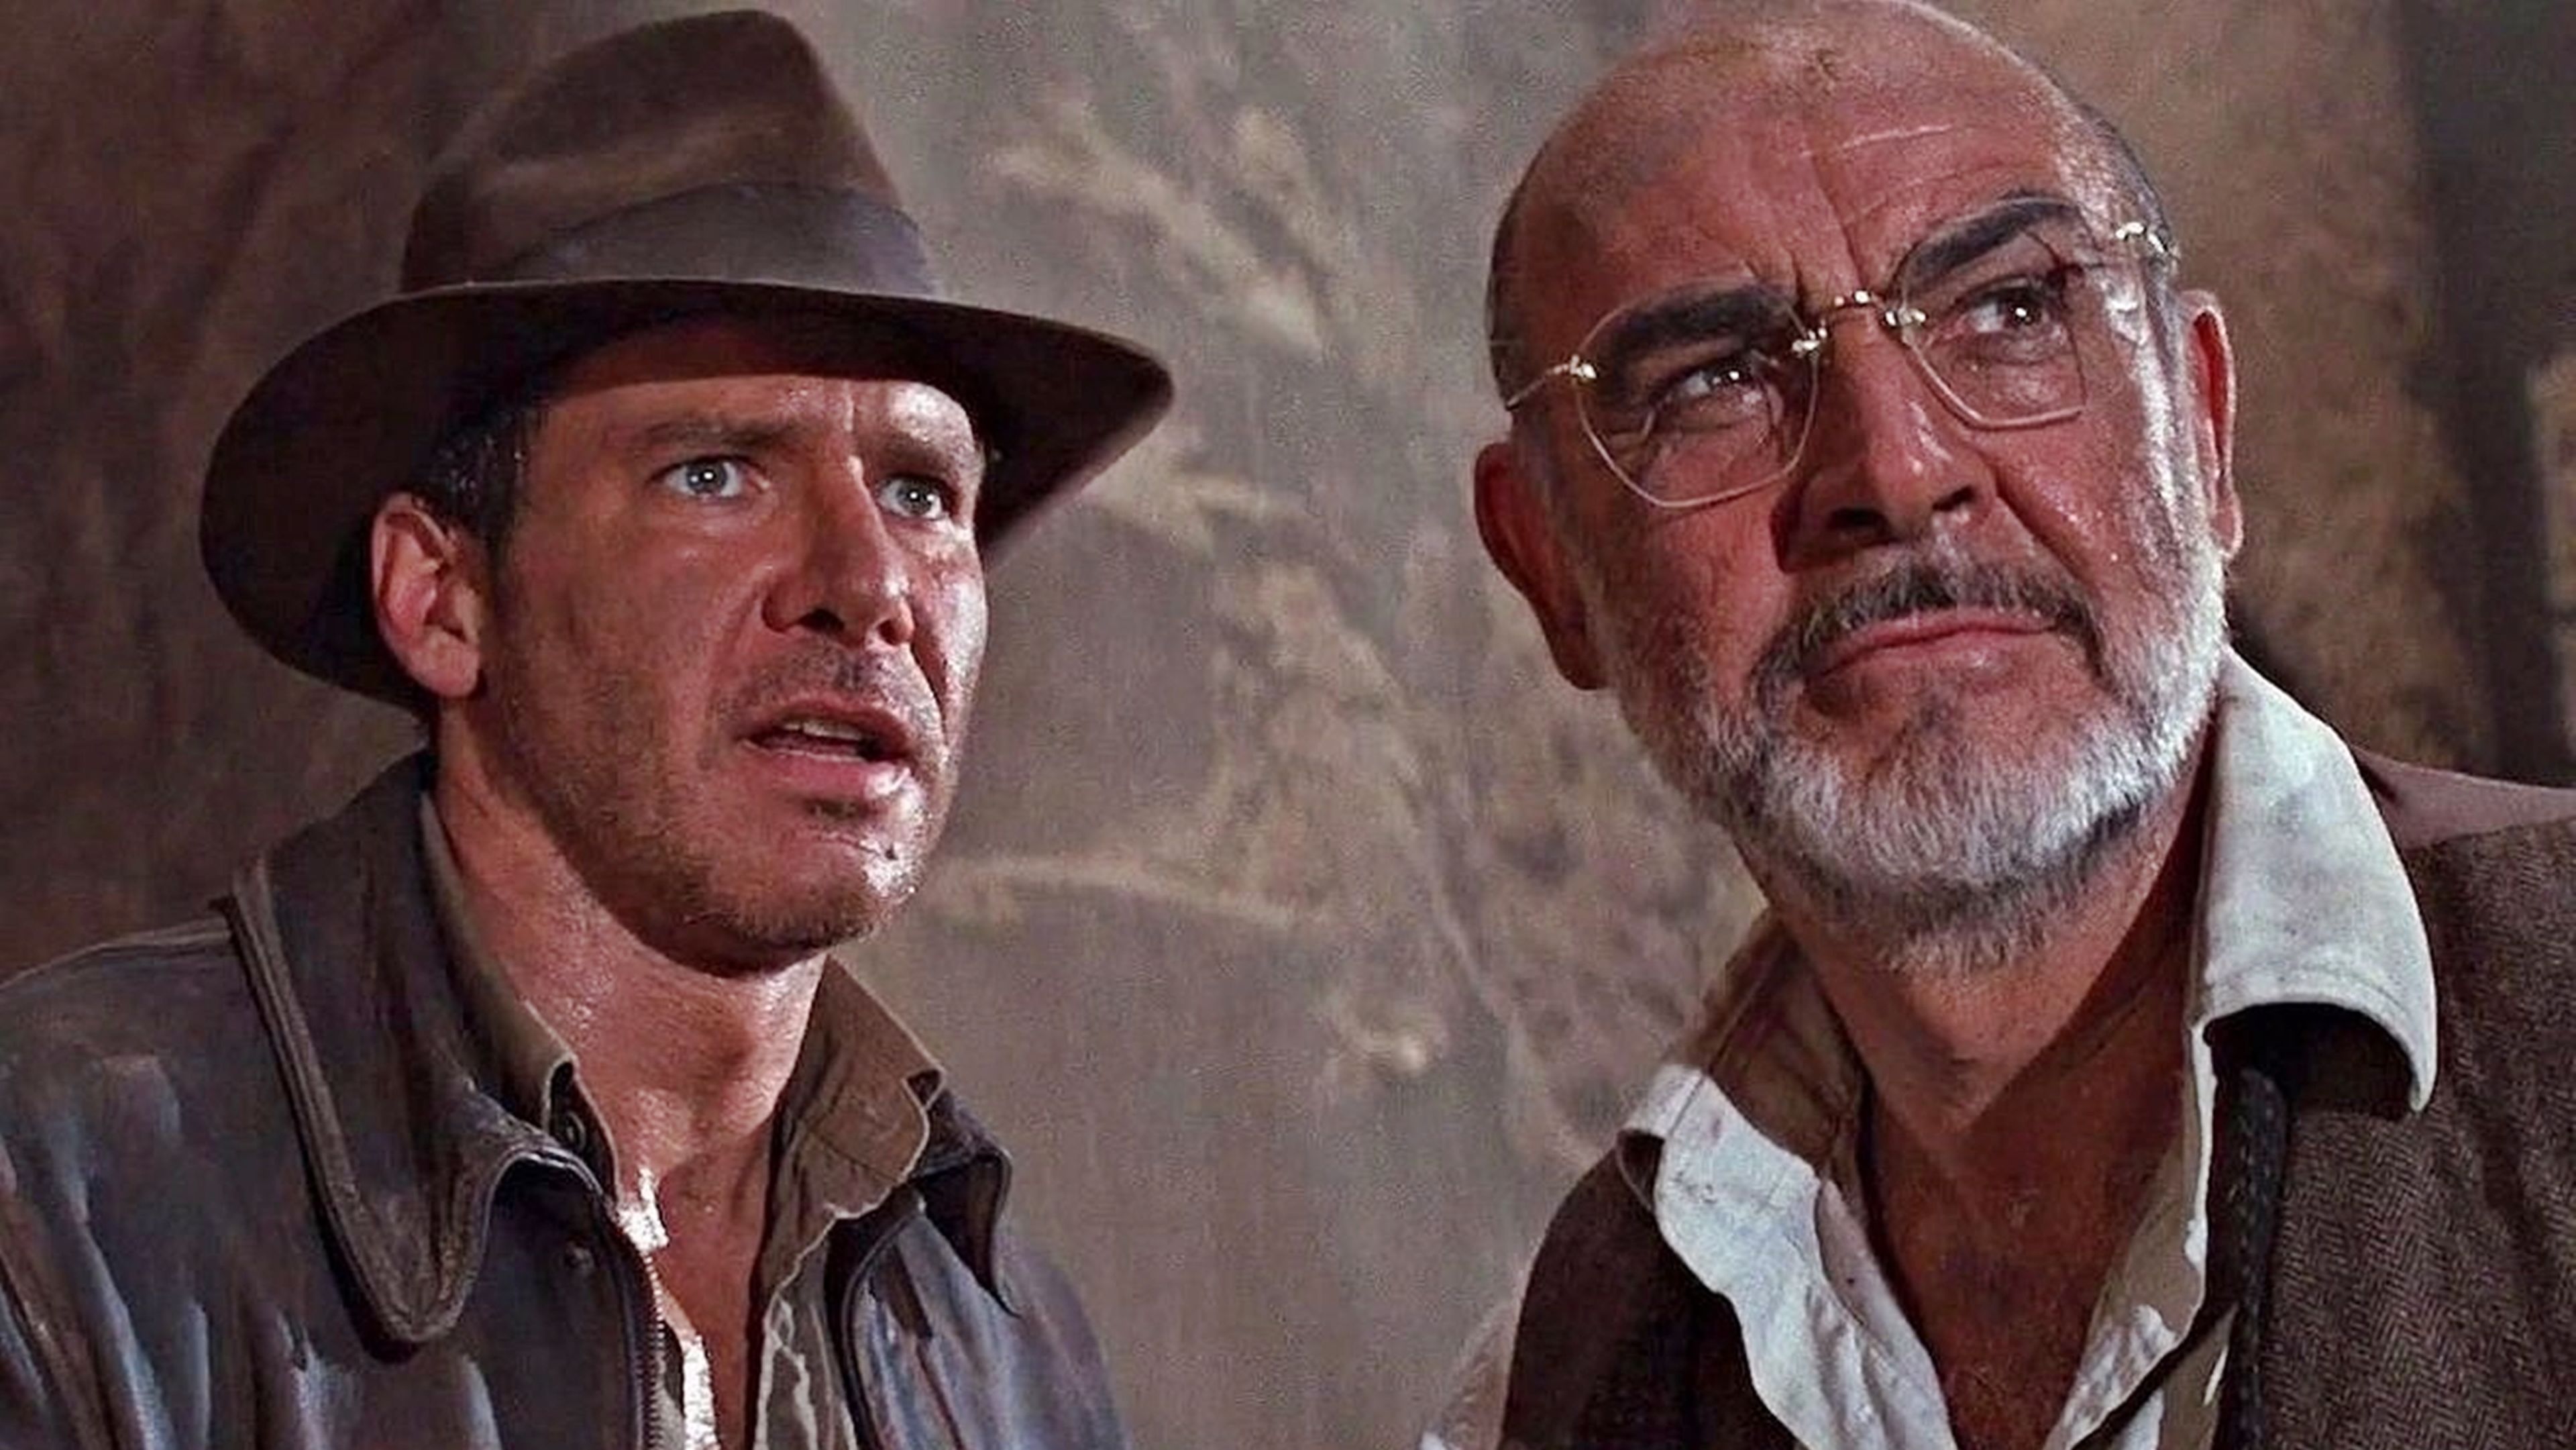 Indiana Jones y la última cruzada